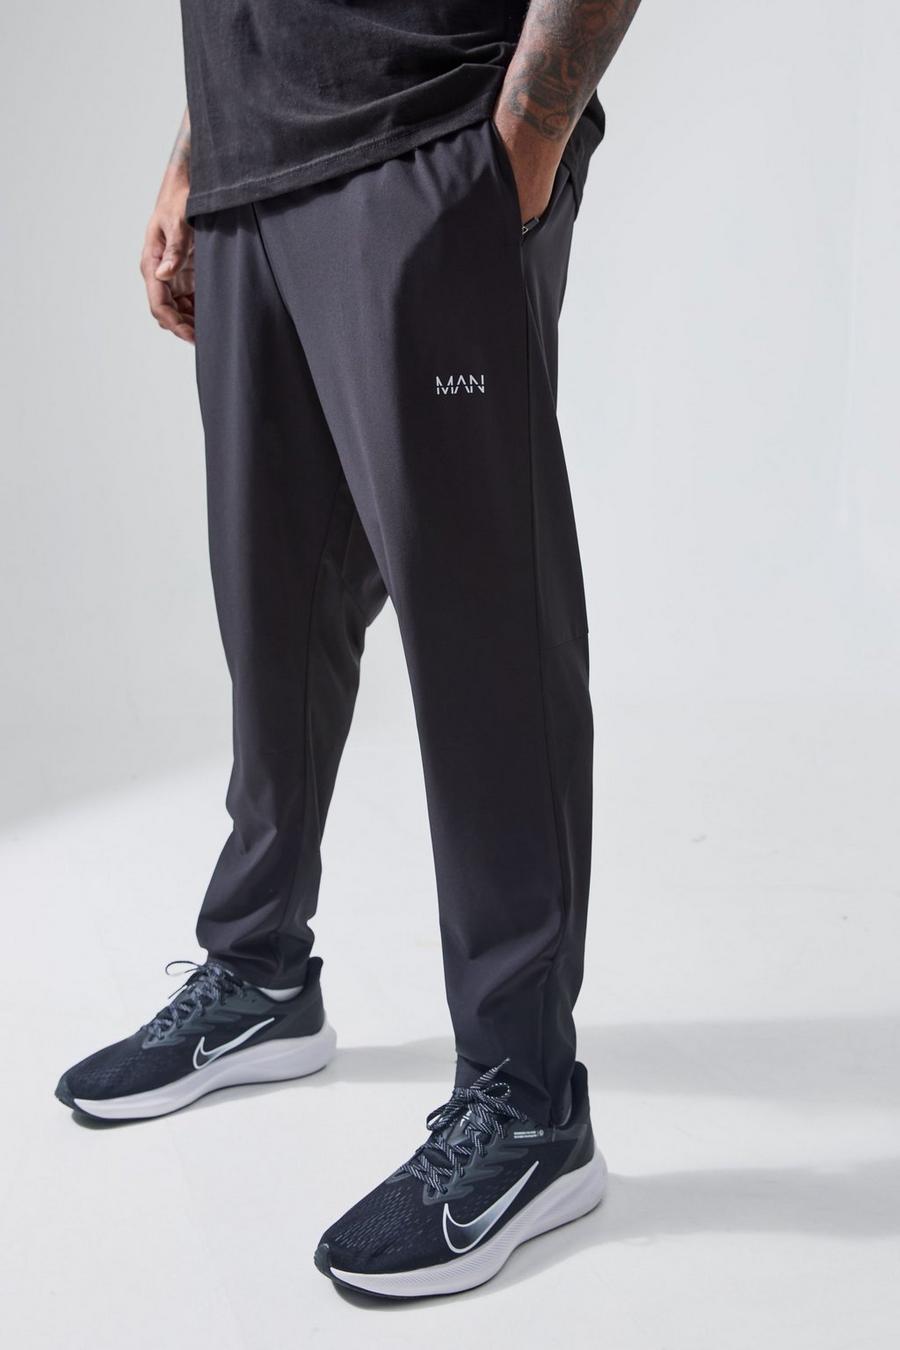 Pantalón deportivo Plus MAN Active deportivo resistente con cremallera en los bolsillos, Black image number 1